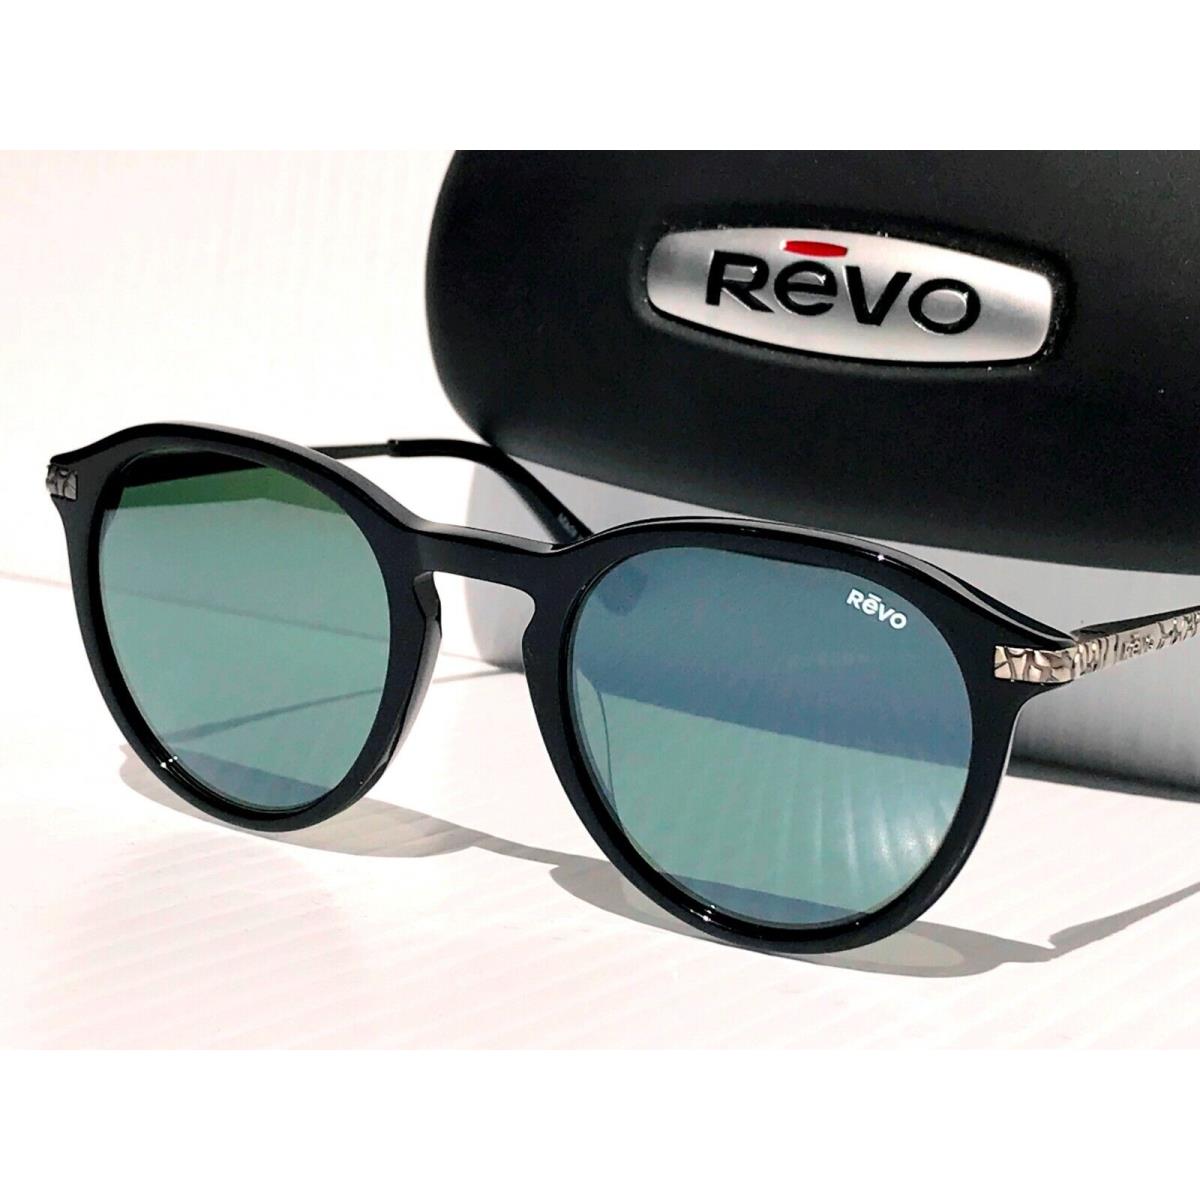 Revo sunglasses PYTHON - Black Frame, Gray Lens 9